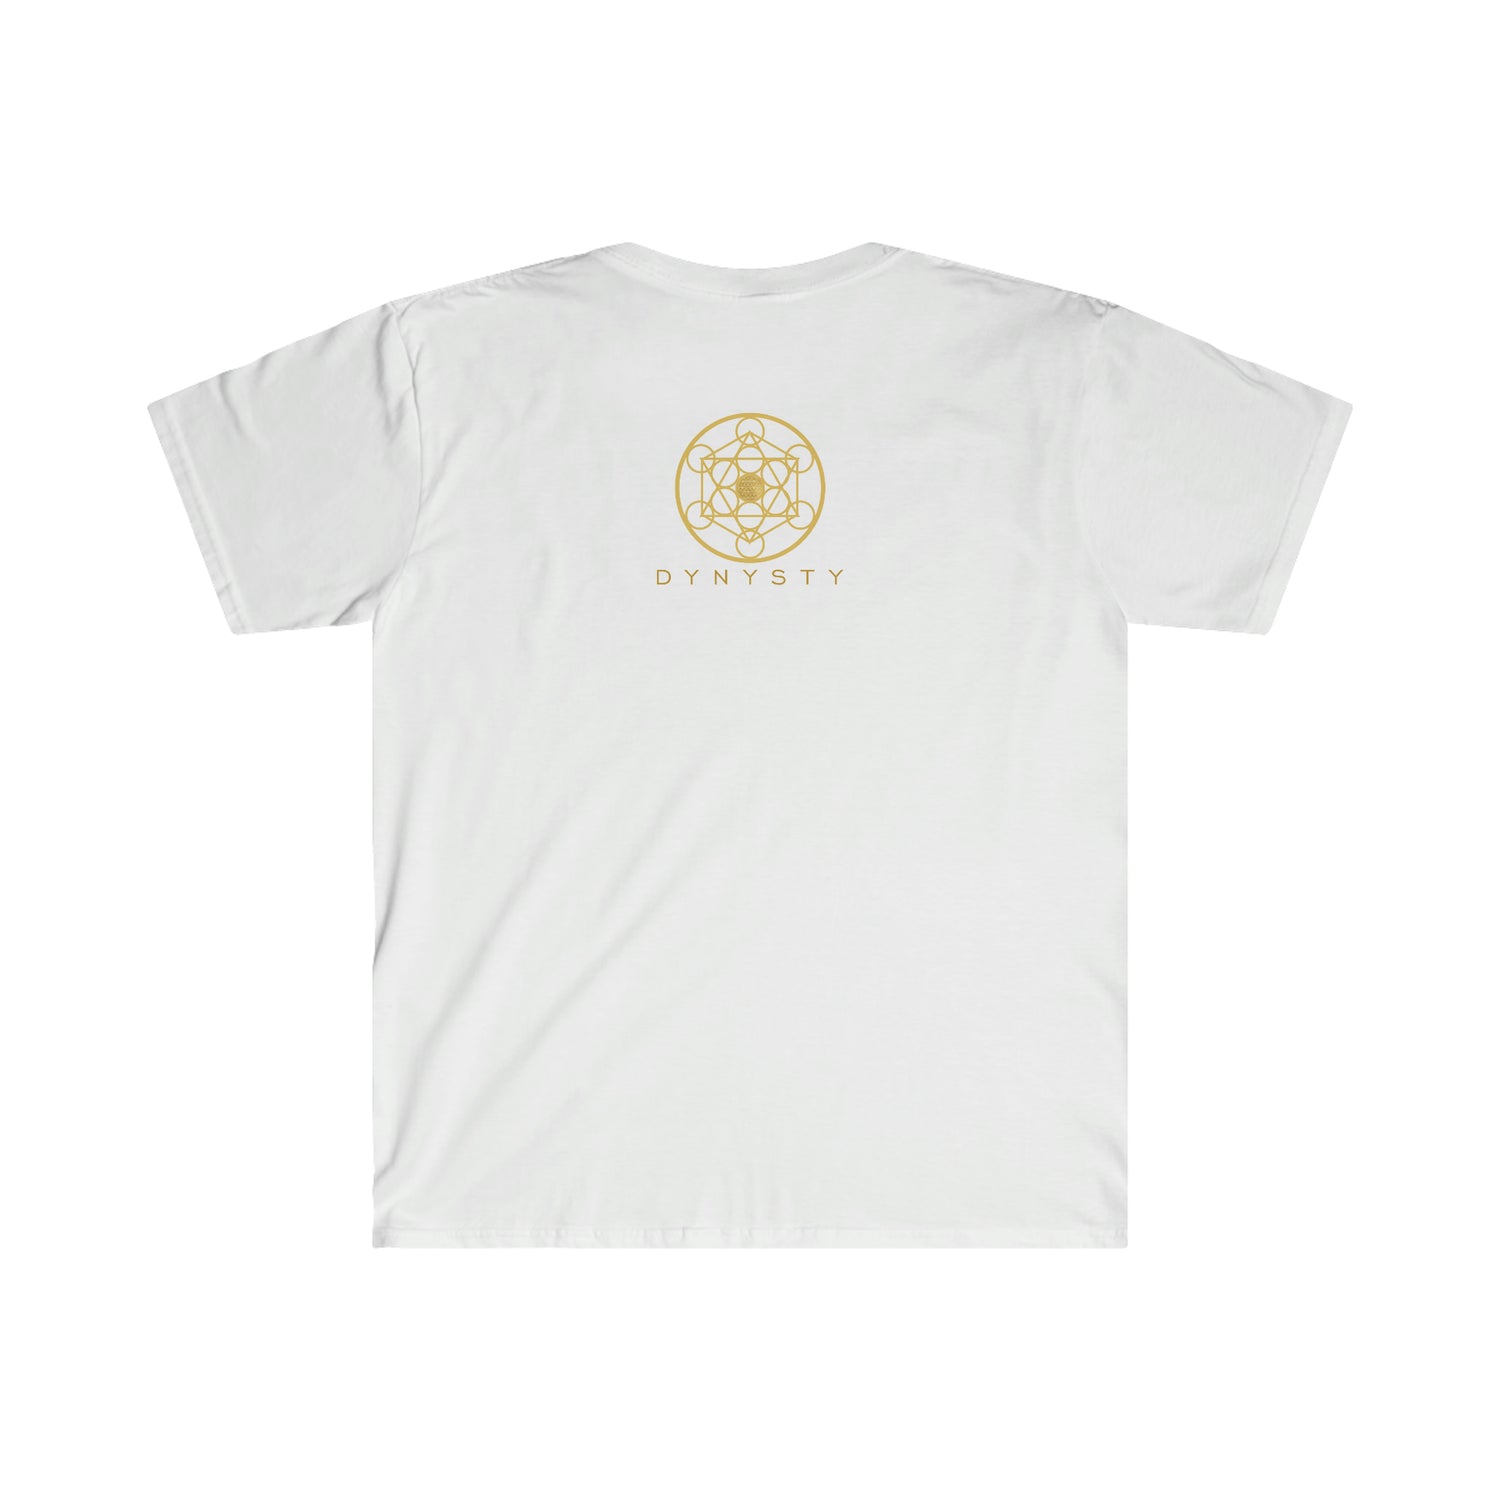 GOD IS THE PLUG - Unisex Soft-Style T-Shirt